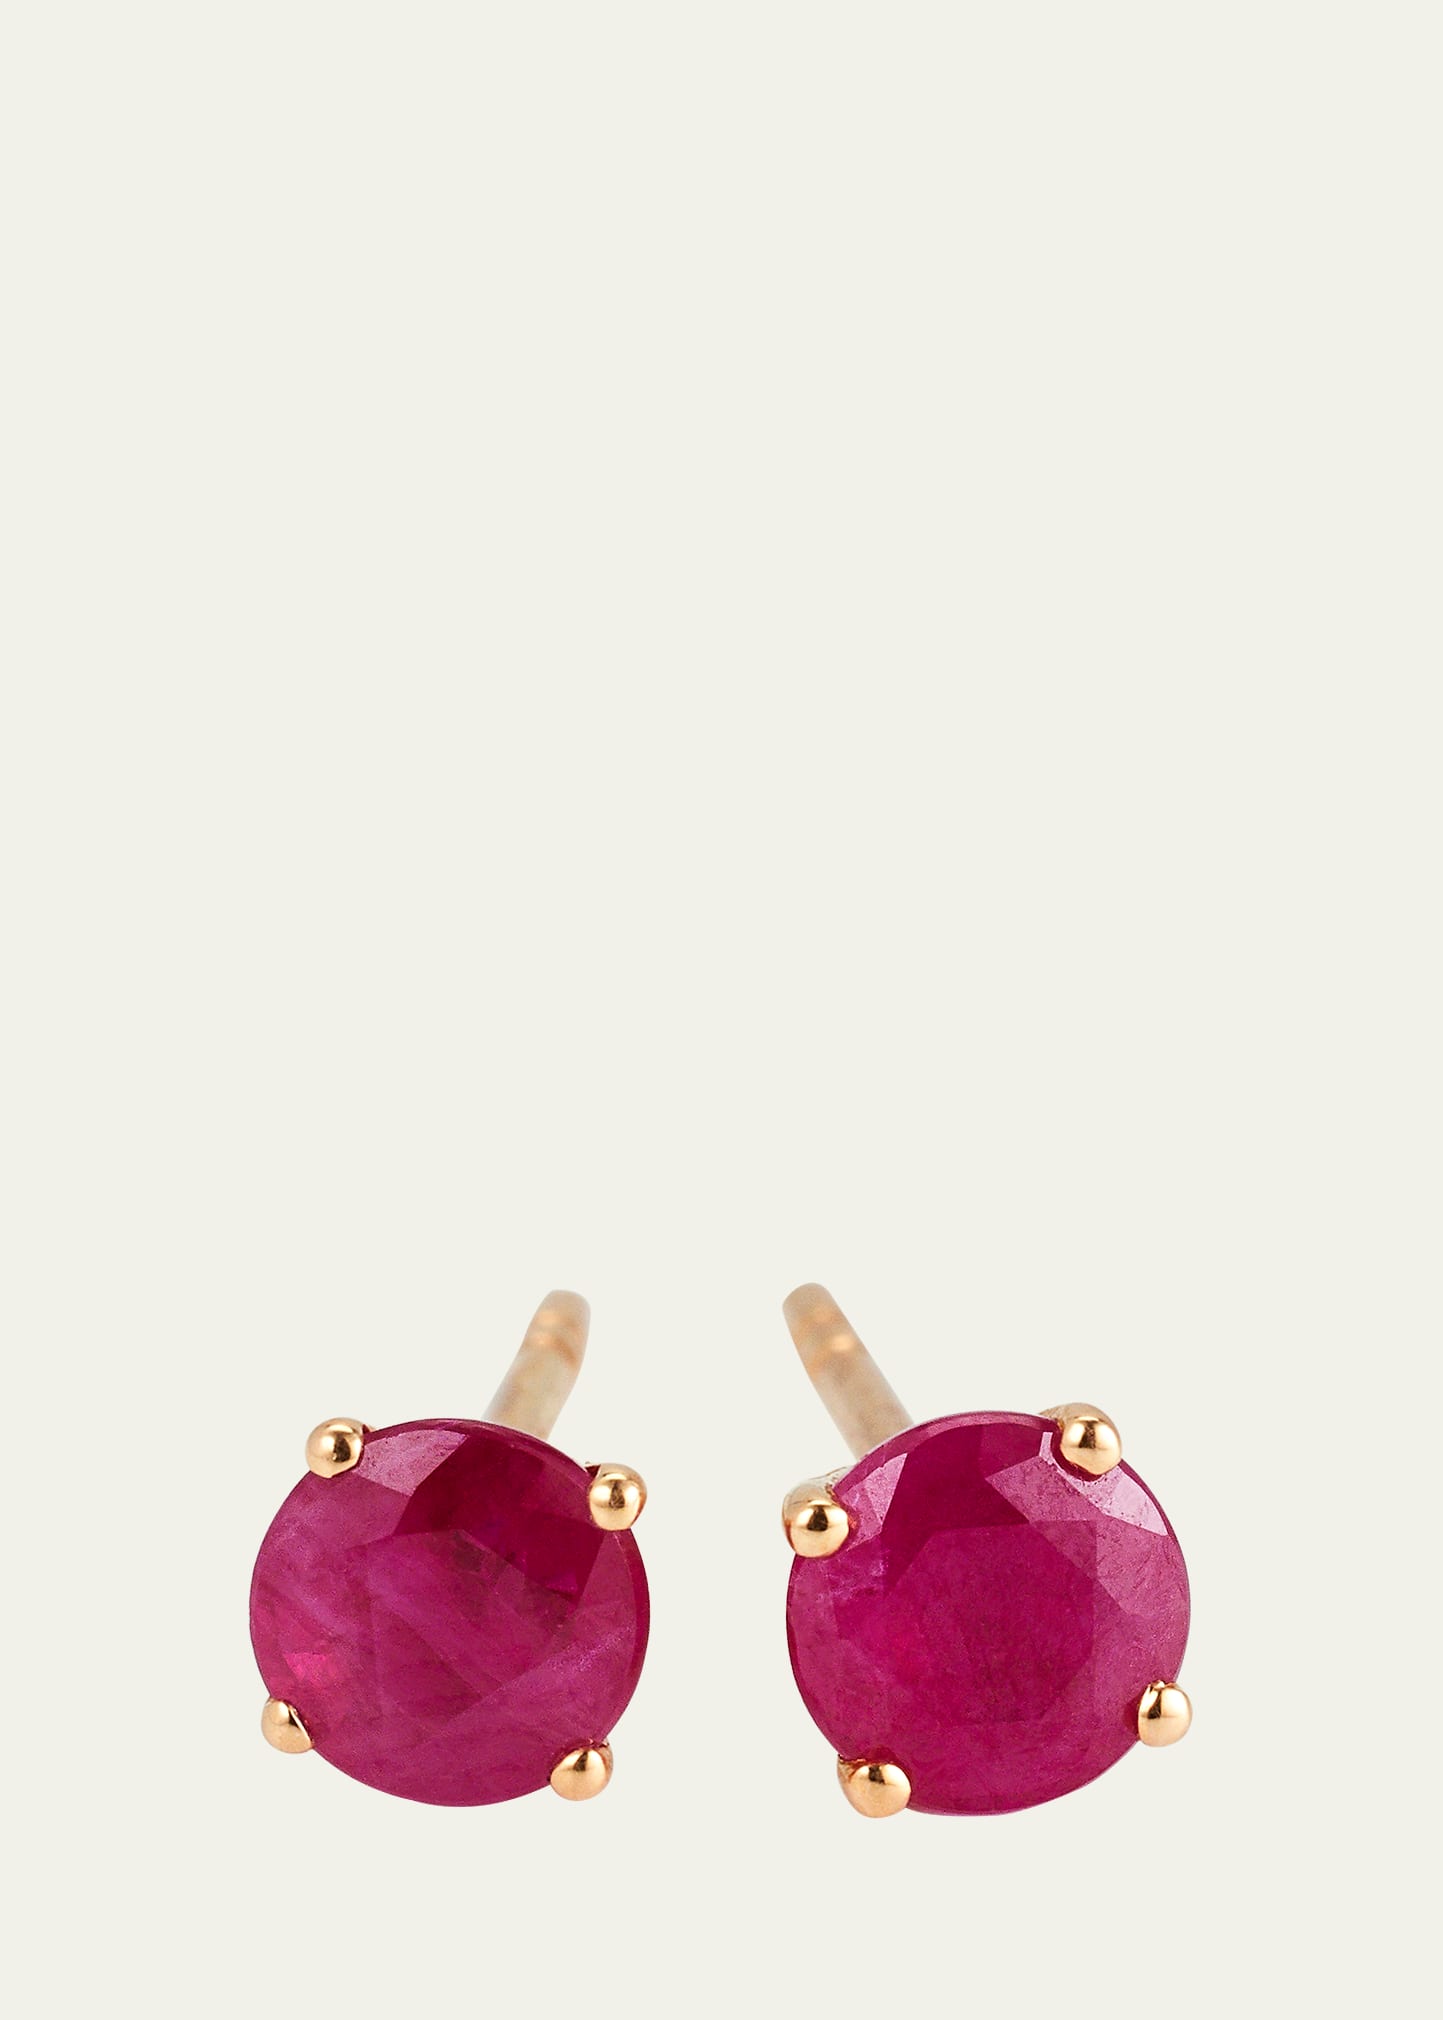 Alice Van Cal 18k Rose Gold Gemstone Stud Earrings In Ruby